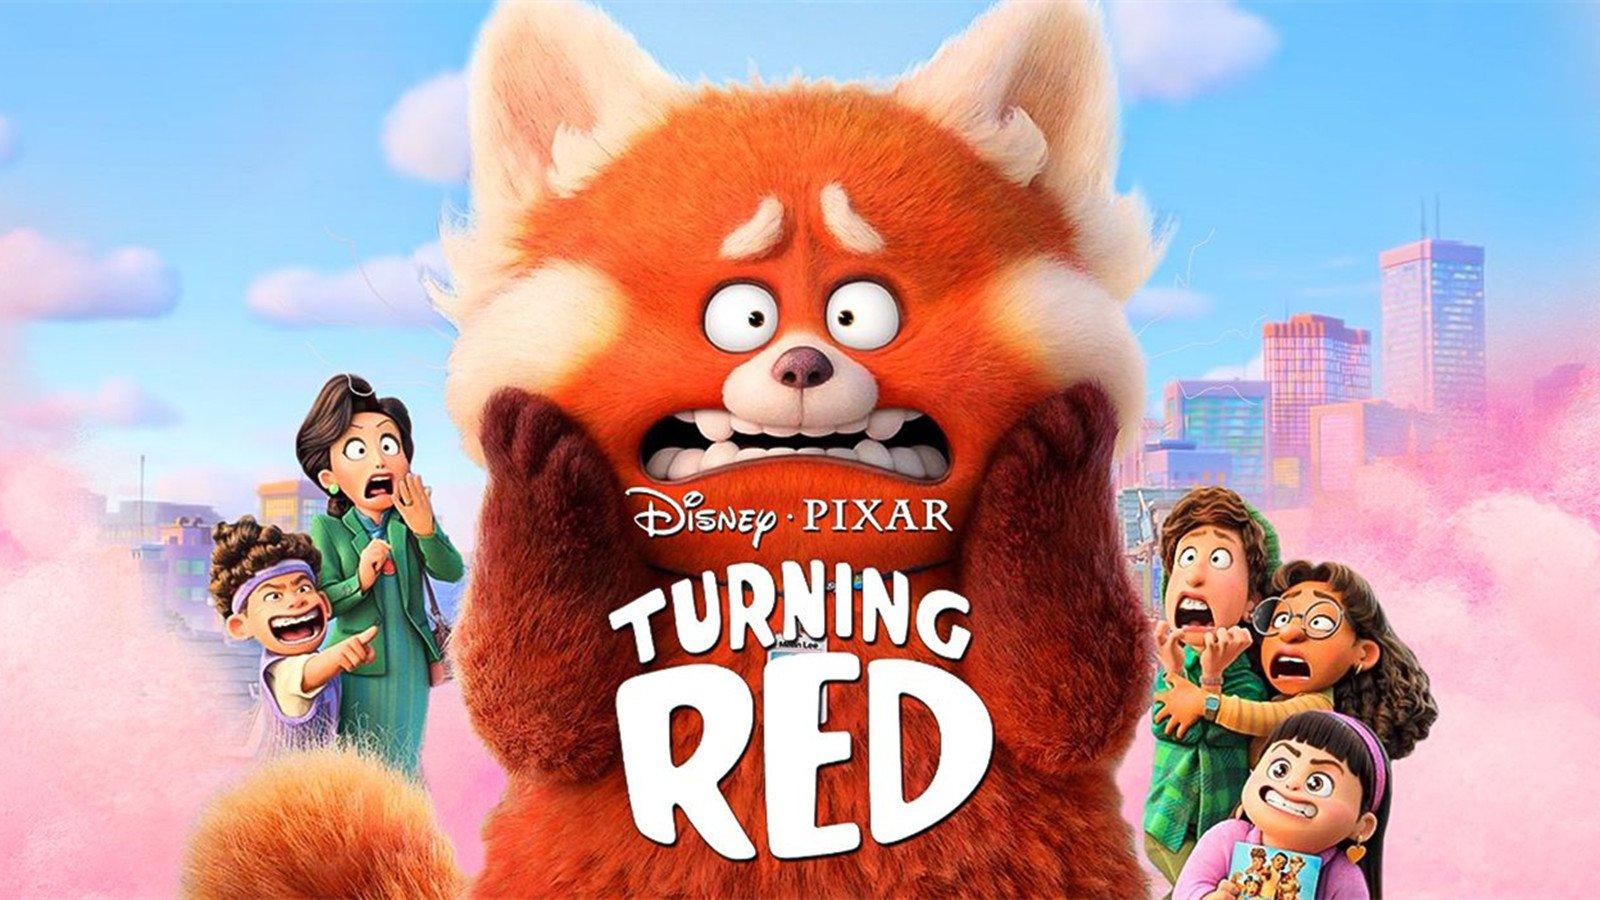 Những hình ảnh về gấu đỏ biến hình trong bộ phim Turning Red vừa kịp phát hành sẽ khiến bạn trầm trồ vì độ đáng yêu và dễ thương của nhân vật chính. Hãy xem để tận hưởng những giây phút giải trí thú vị!